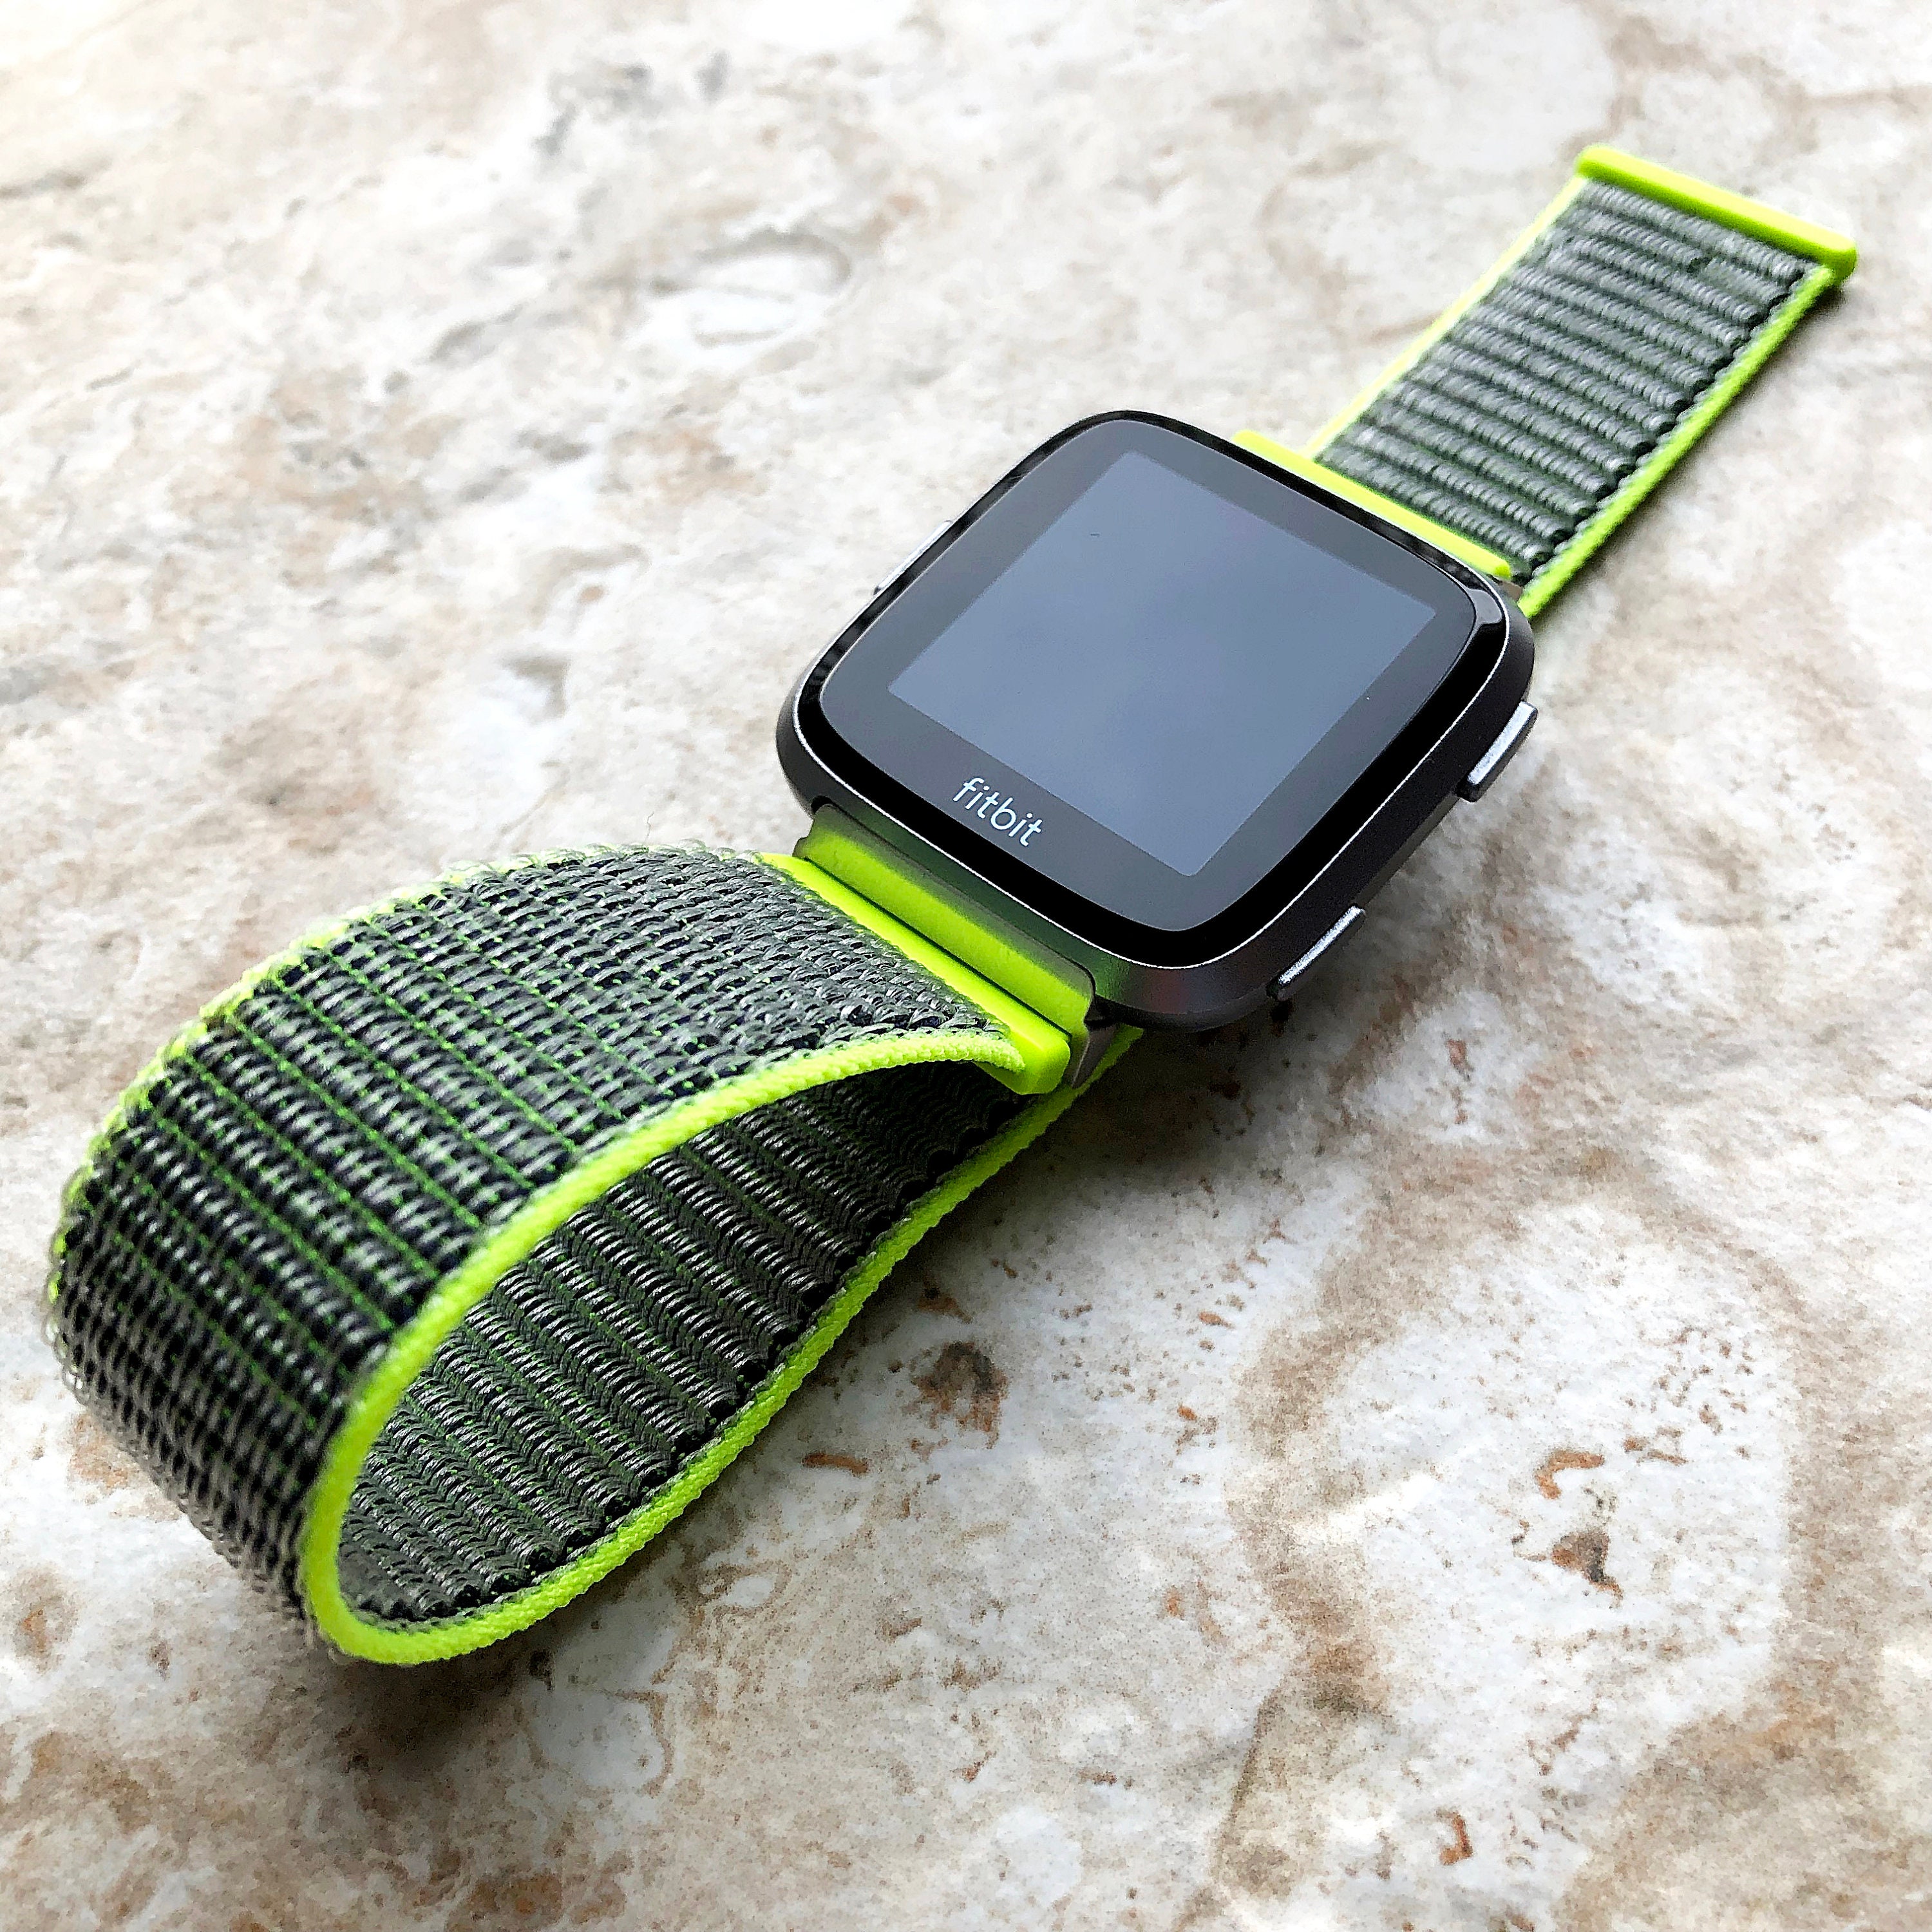 Reloj smart watch con 7 correas intercambiables de diferentes diseños /  ultra 7 in 1 strap – Joinet